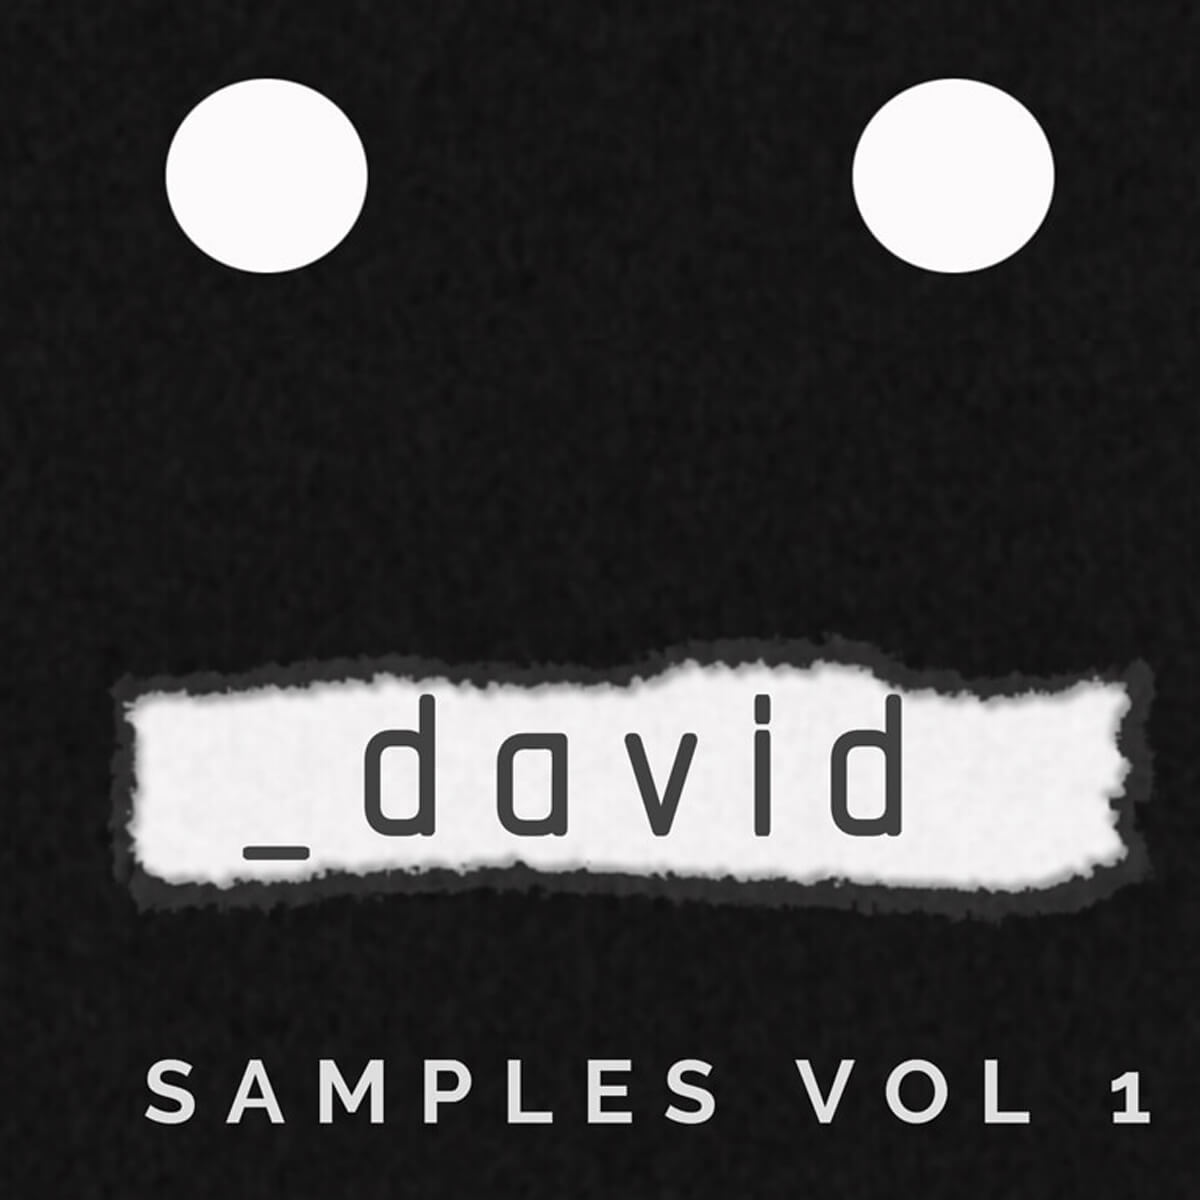 _david Samples Vol. 1